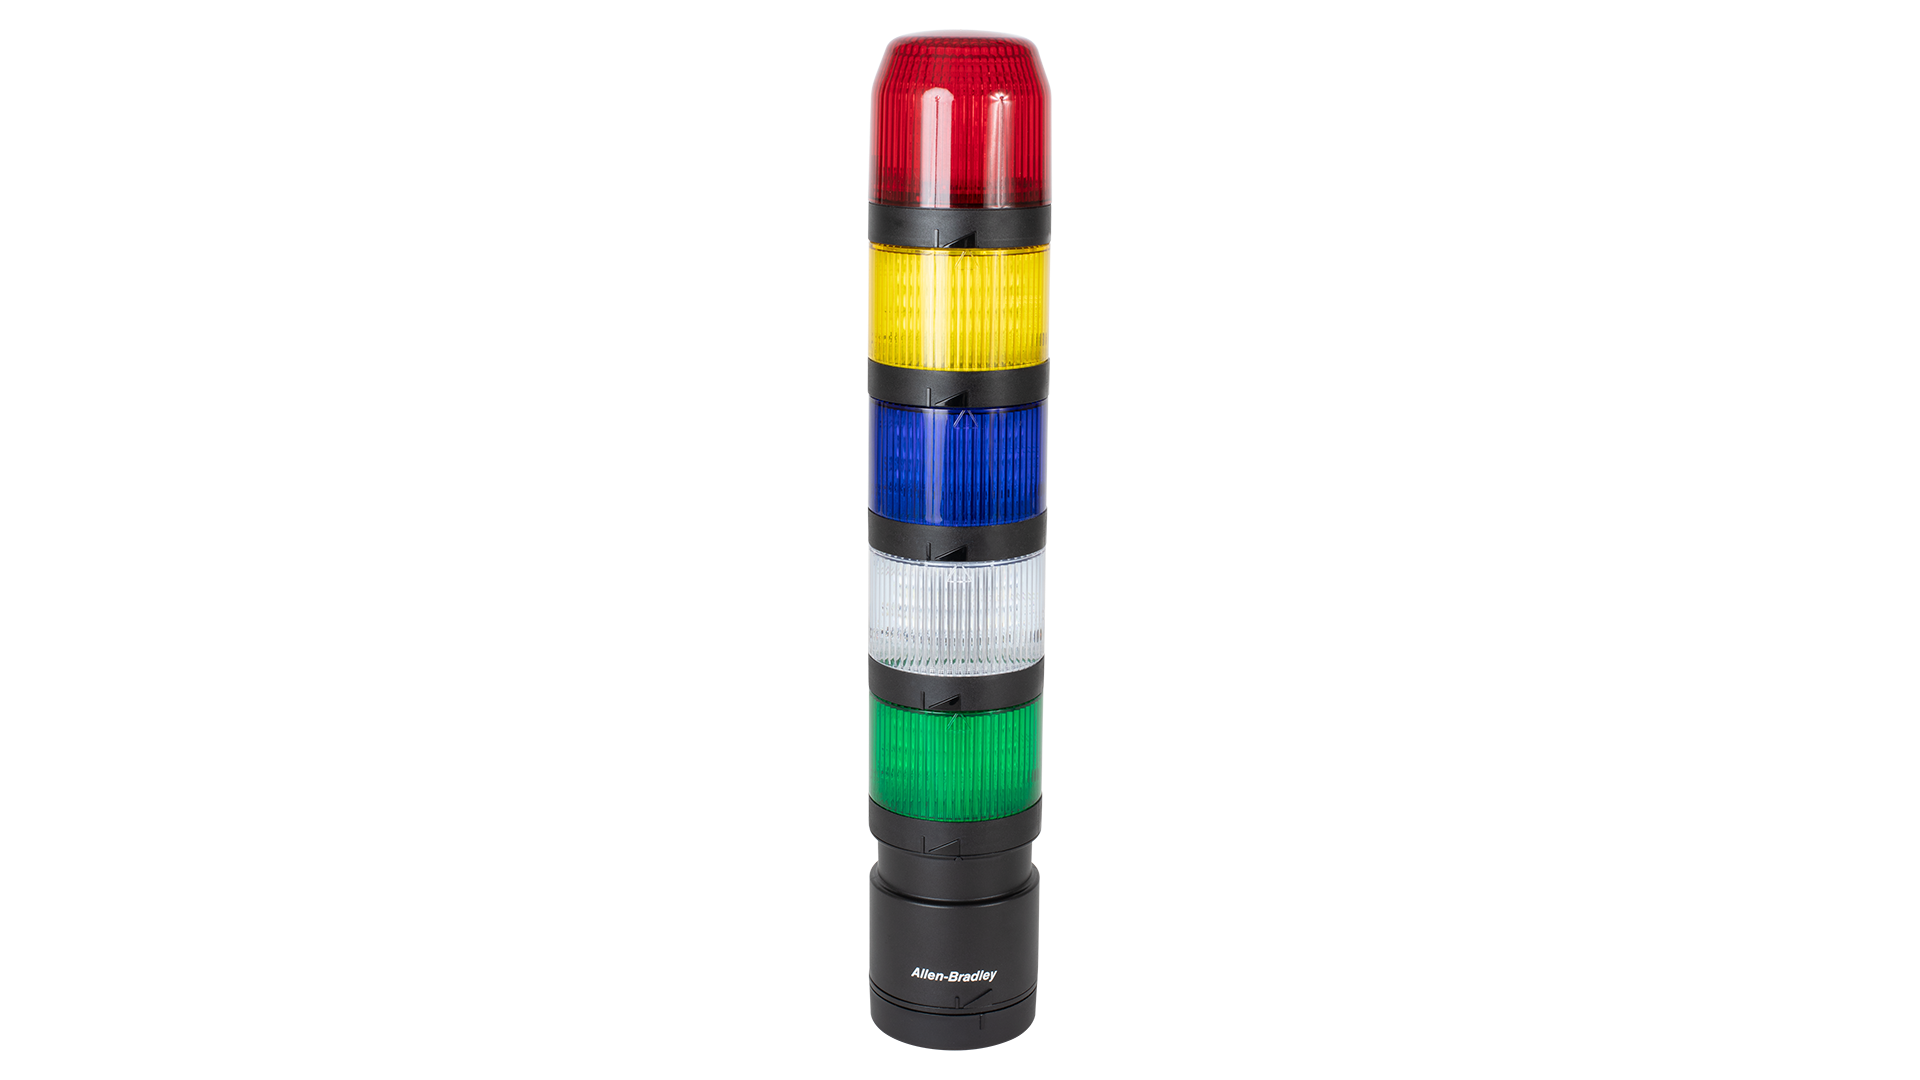 Colonne lumineuse IO-Link. De haut en bas, des modules avertisseurs sonores à détecteurs noirs, des modules lumineux éteints rouge, orange et vert, et un socle de montage verticale noir